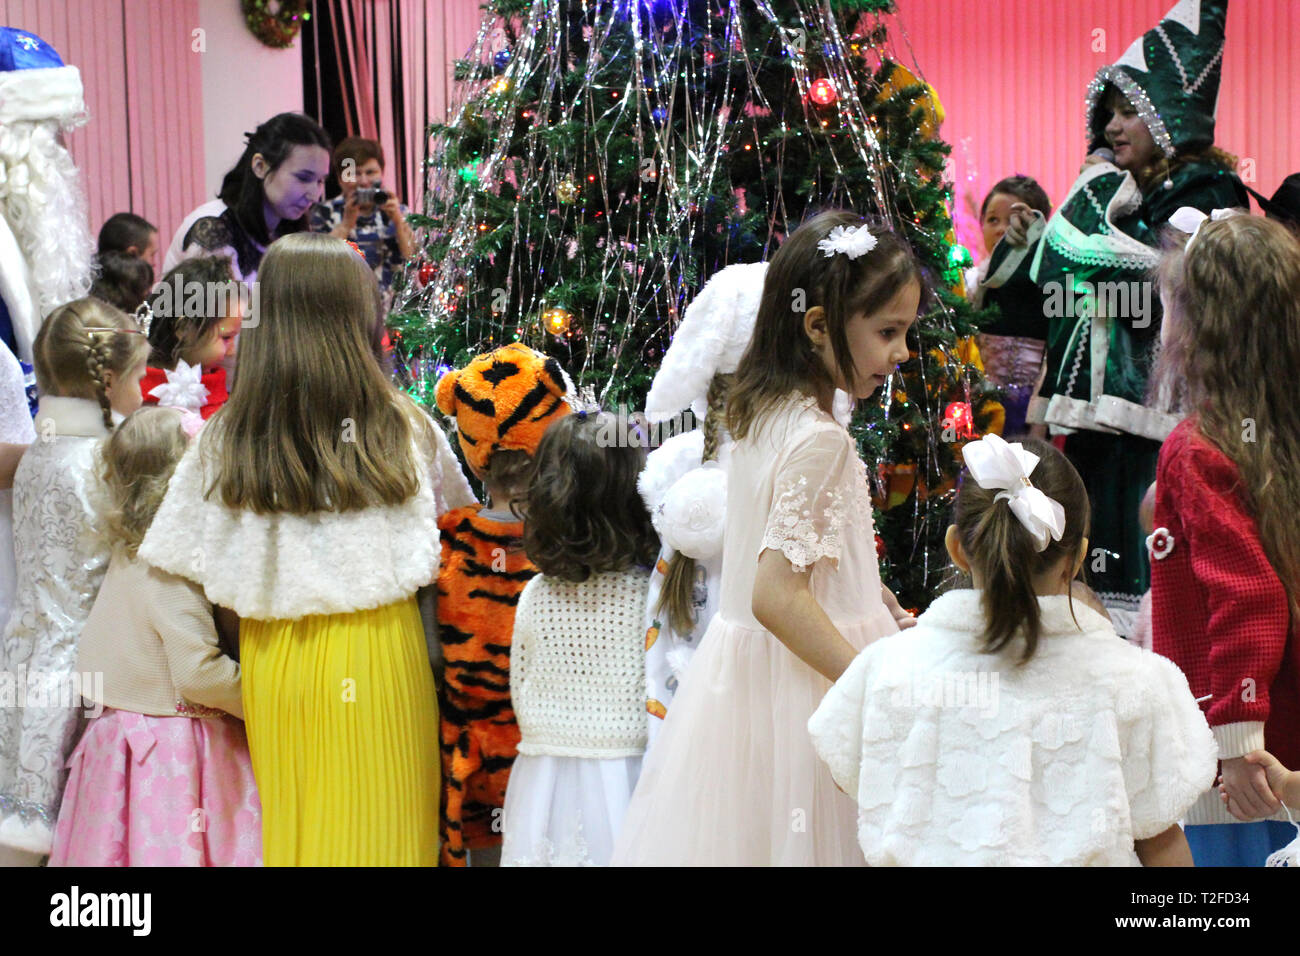 Una gran cantidad de hermosos niños vestidos elegantes en las niñas y los niños en Fancy Dress divirtiéndose en la fiesta año nuevo alrededor del árbol de Navidad Fotografía de stock -